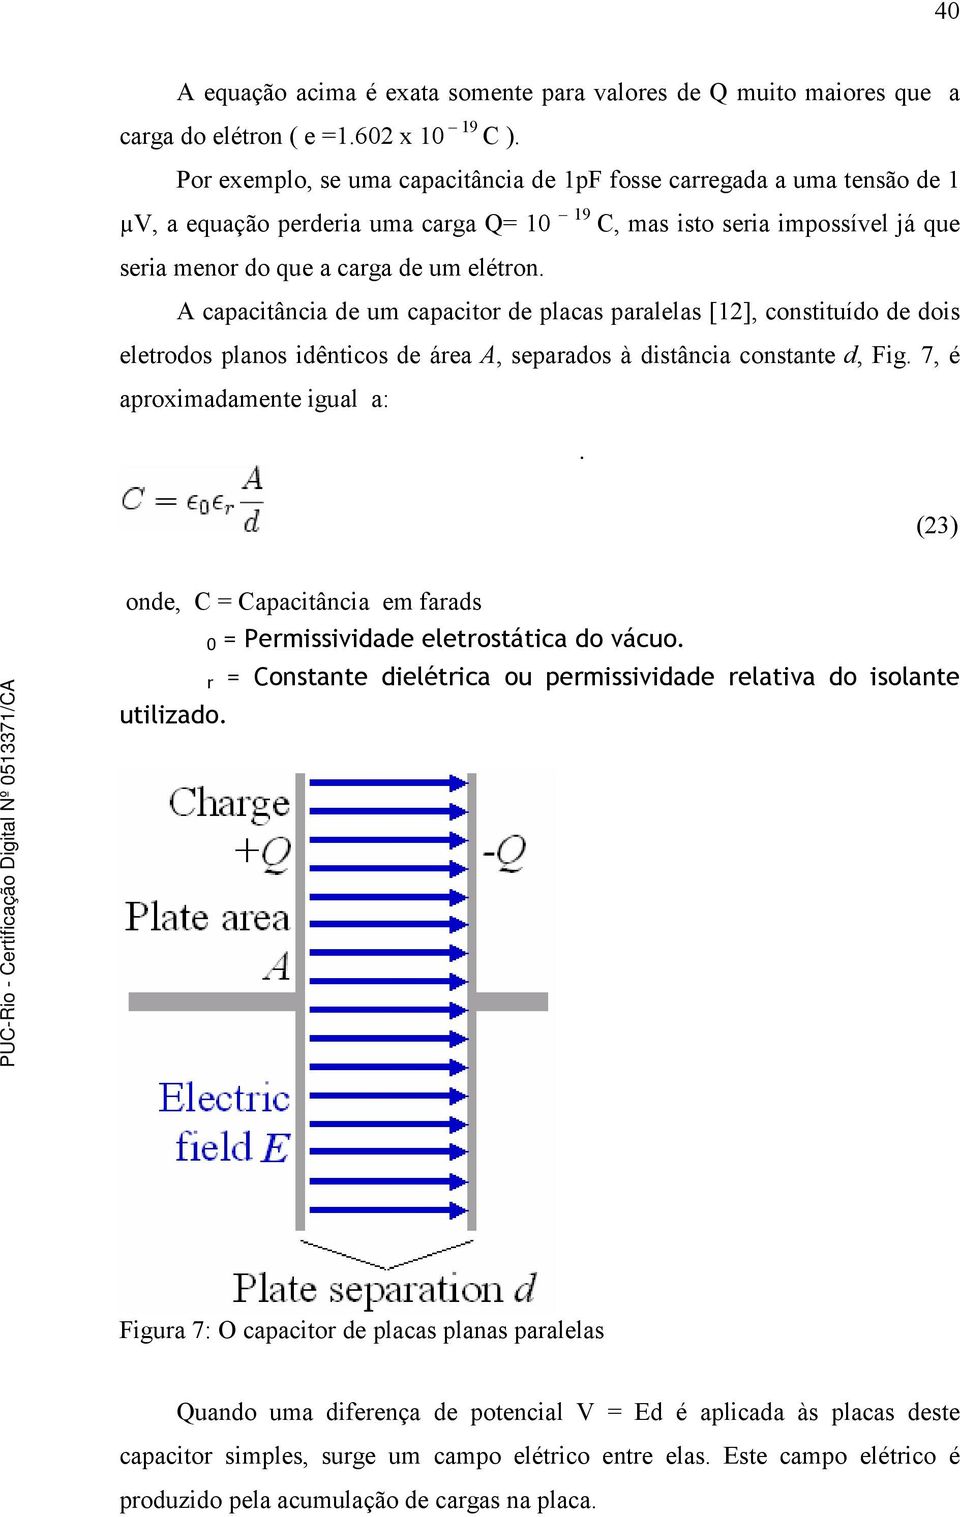 A capacitância de um capacitor de placas paralelas [12], constituído de dois eletrodos planos idênticos de área A, separados à distância constante d, Fig. 7, é aproximadamente igual a:.